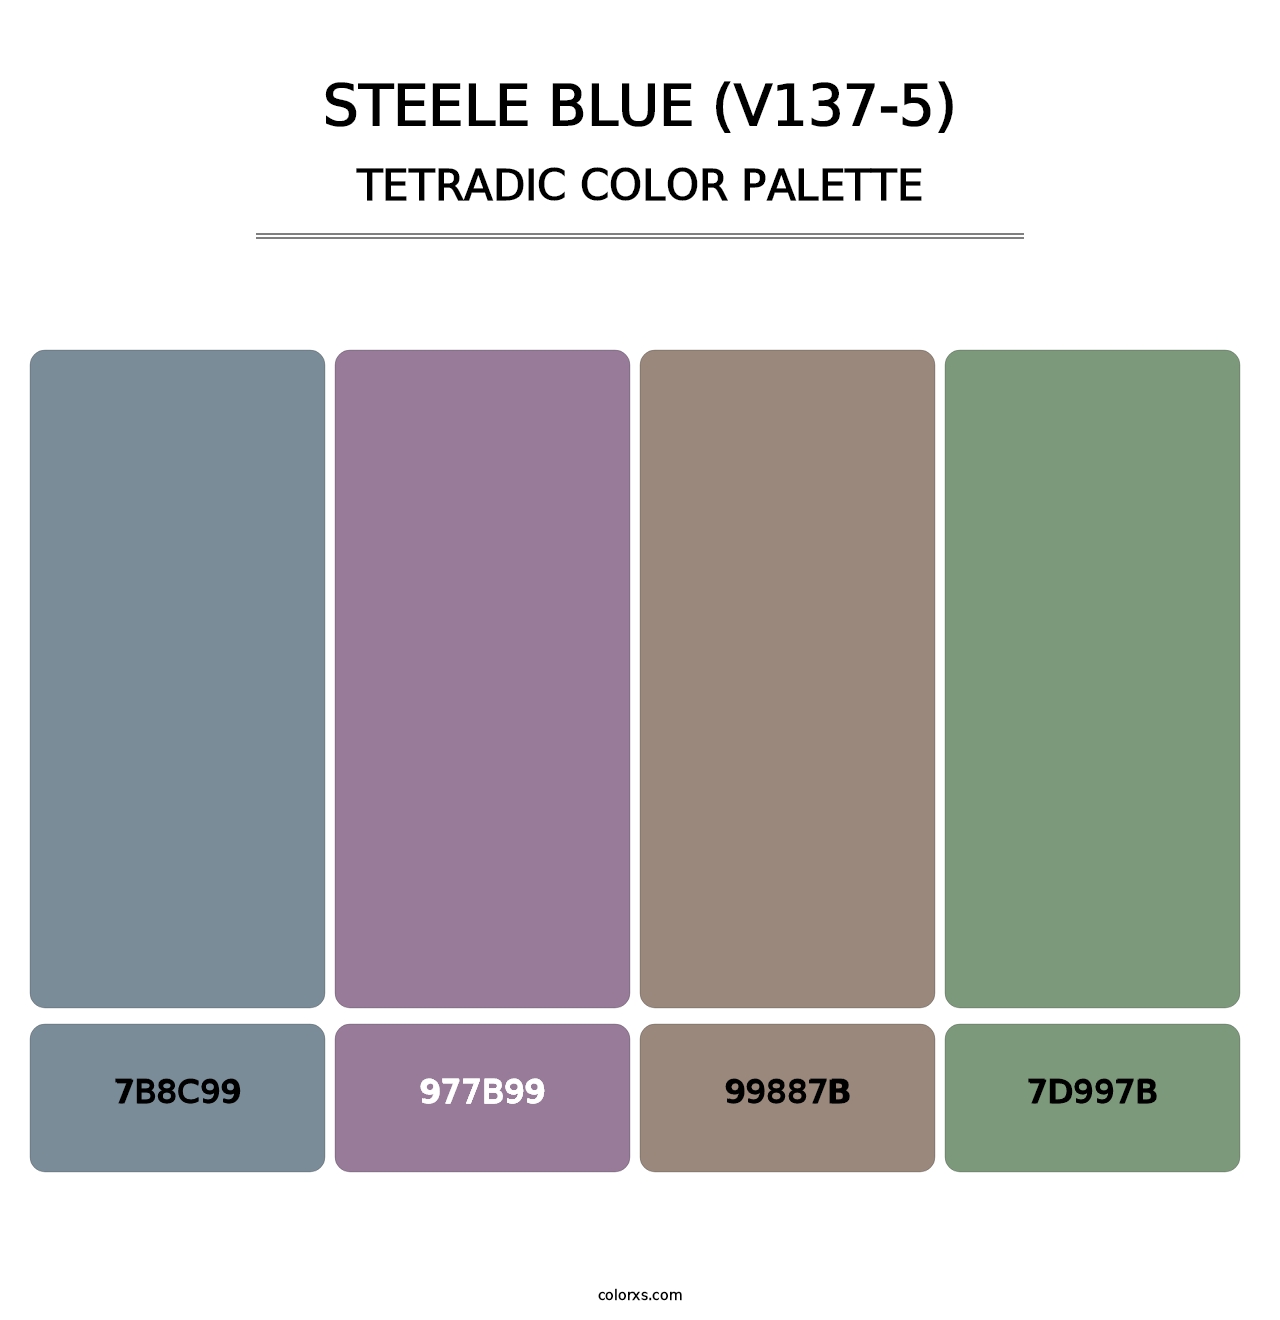 Steele Blue (V137-5) - Tetradic Color Palette